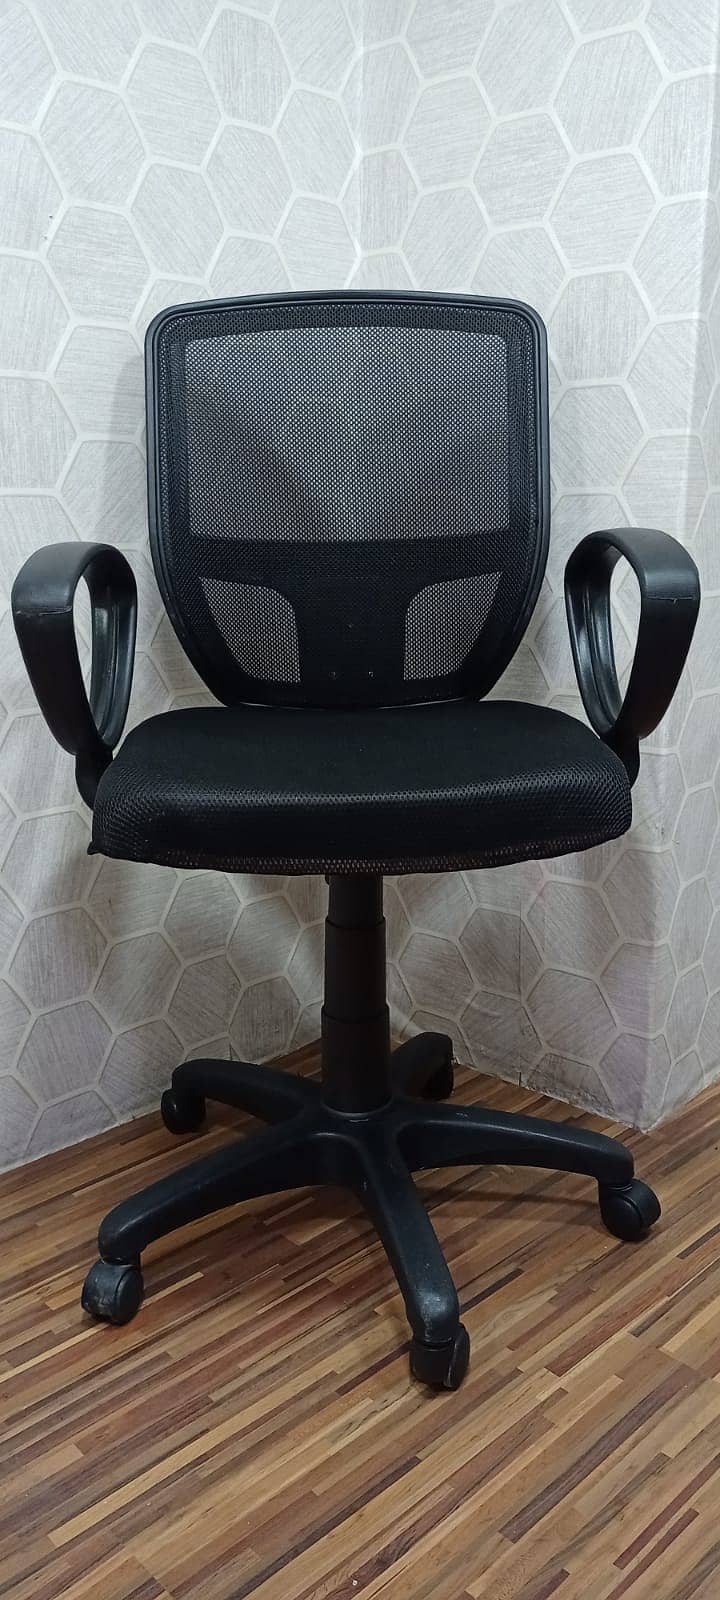 Adjustable Guaranteed Chair. 10